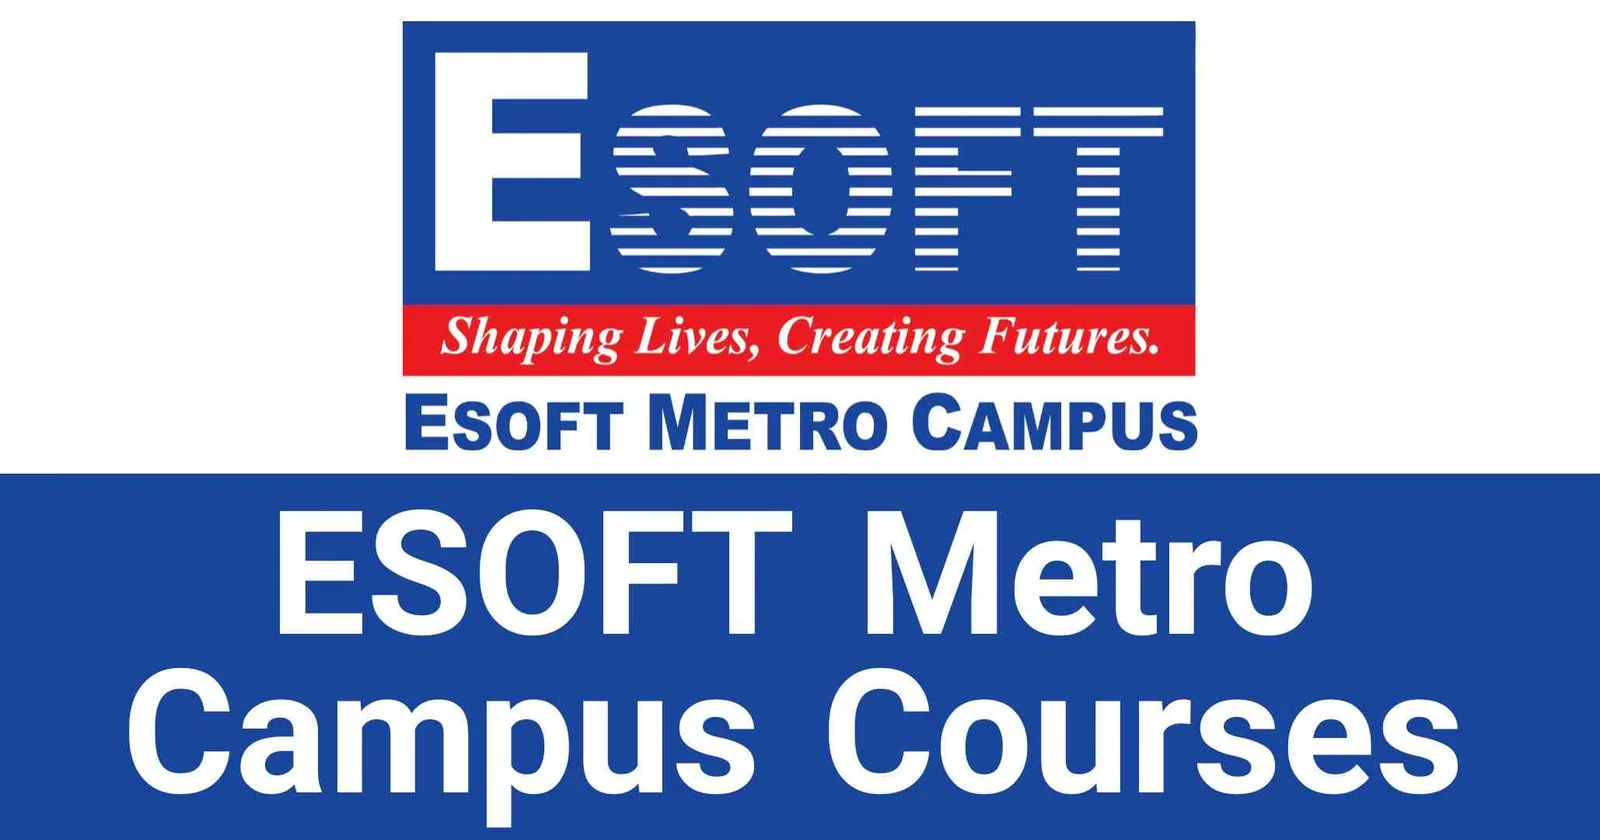 ESOFT Metro Campus Courses